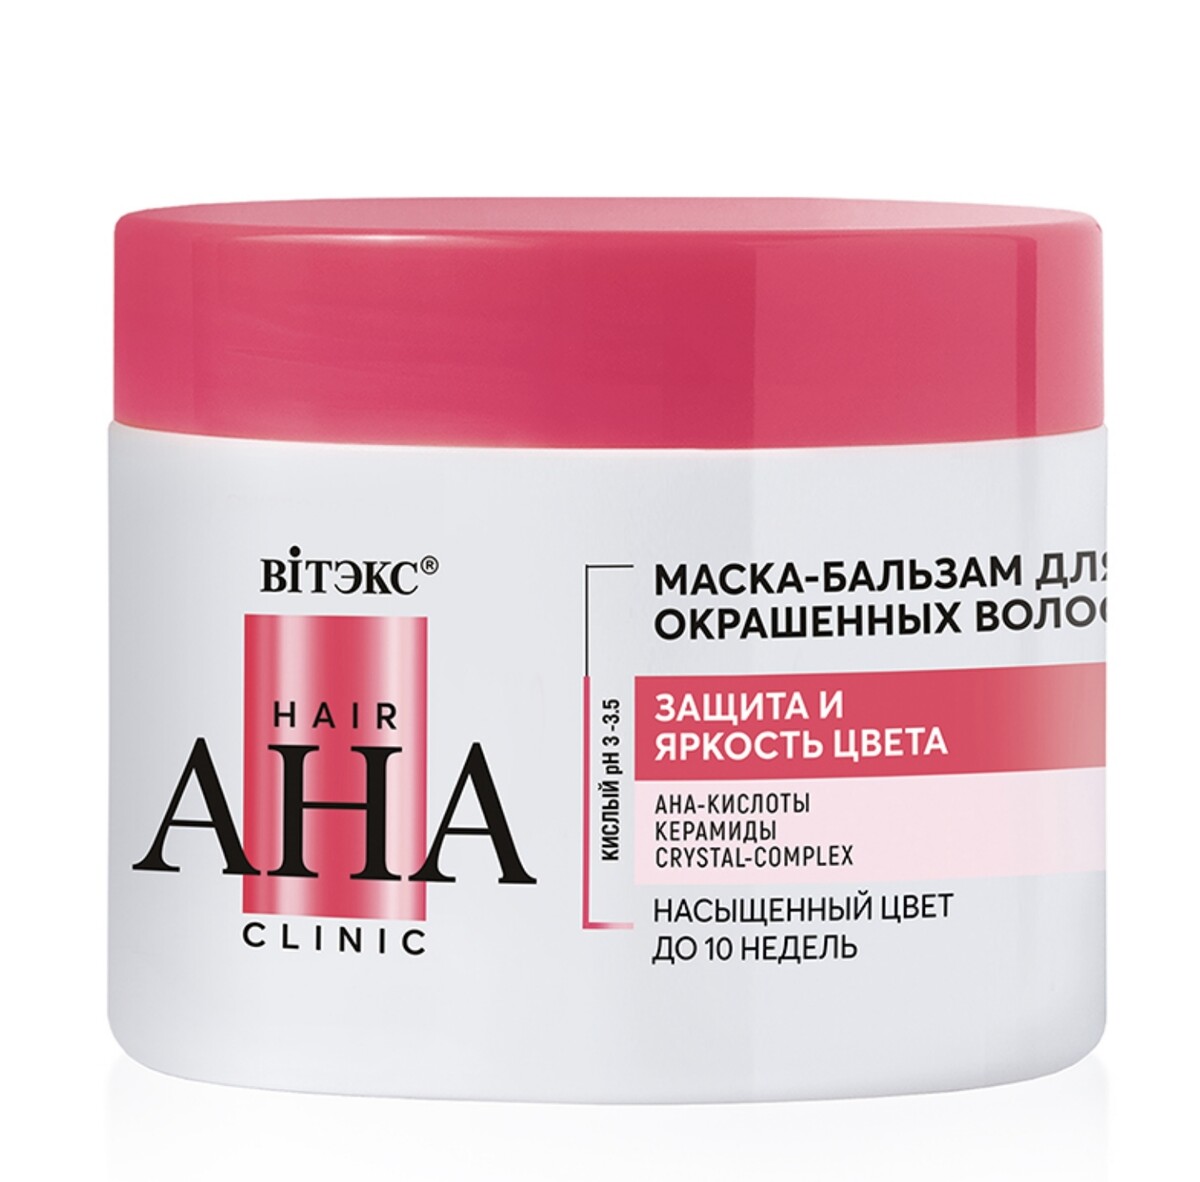 Hair aha clinic маска-бальзам для окрашенных волос защита и яркость цвета 300мл бальзам для роста и утолщения волос с никотинамидом биотином 300мл